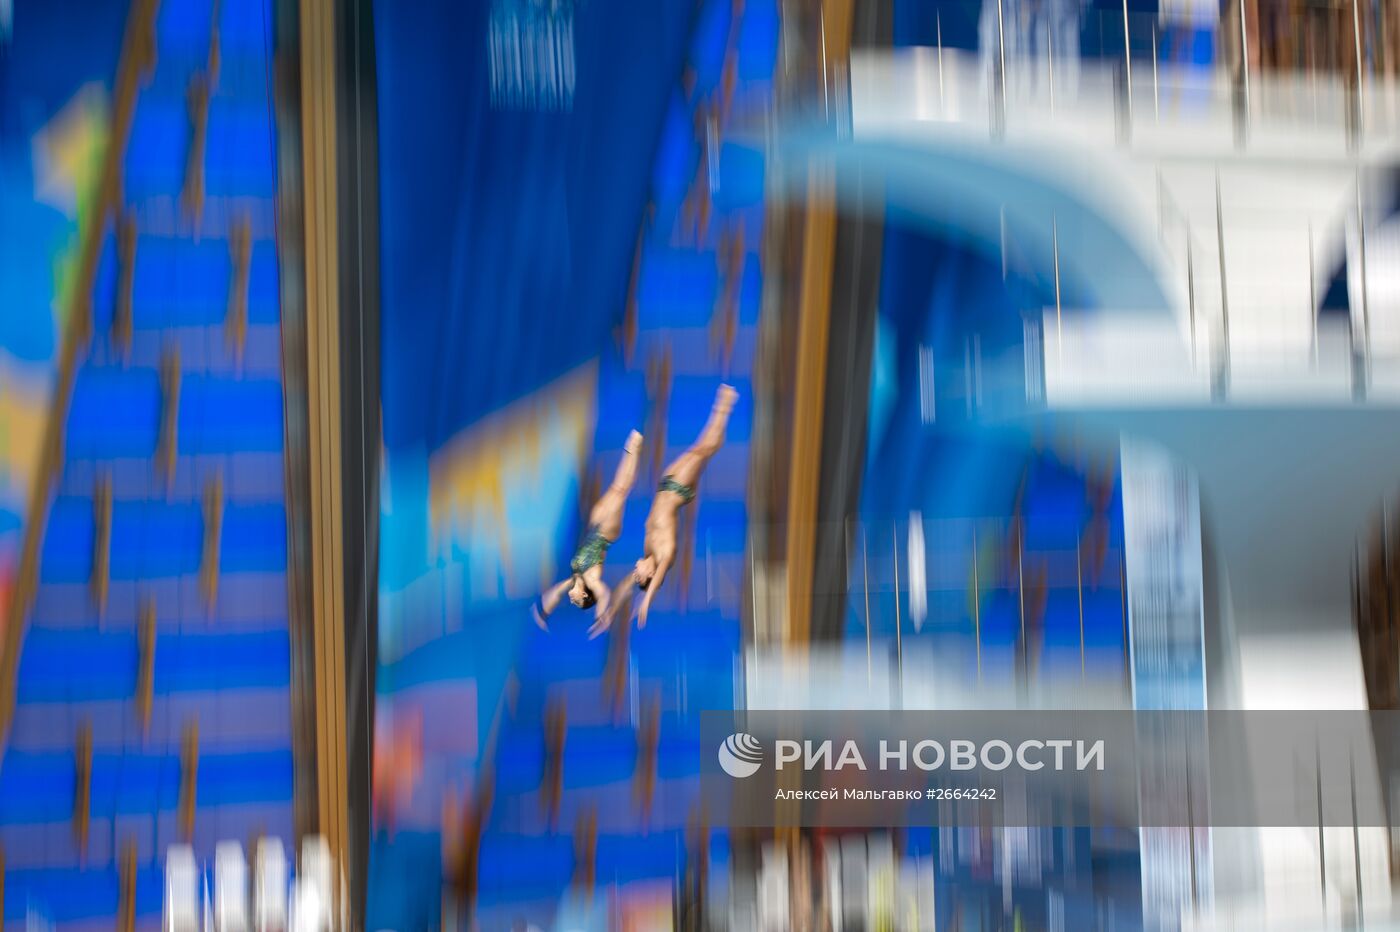 Чемпионат мира FINA 2015. Синхронные прыжки в воду. Смешанный дуэт. Вышка 10 м. Финал